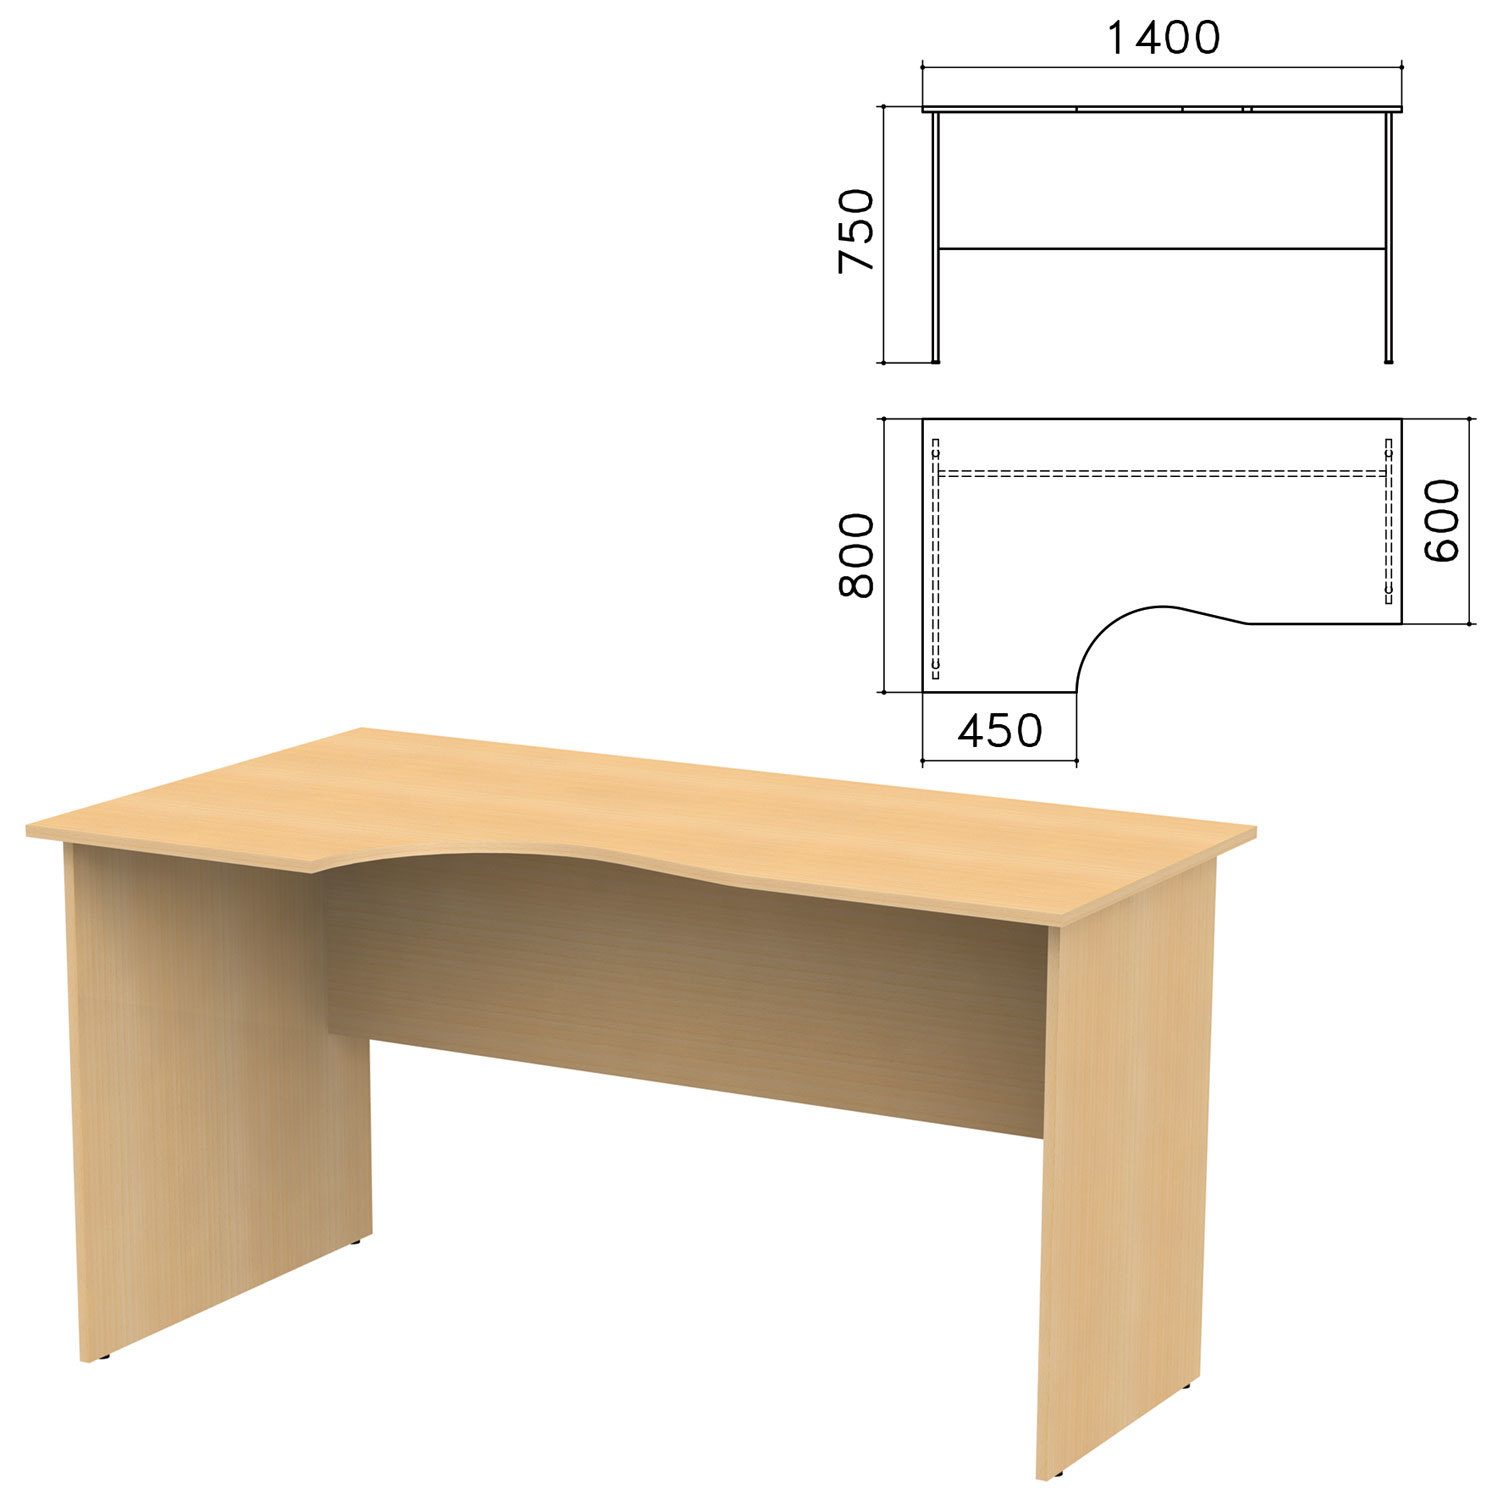 Стол для офиса с размерами